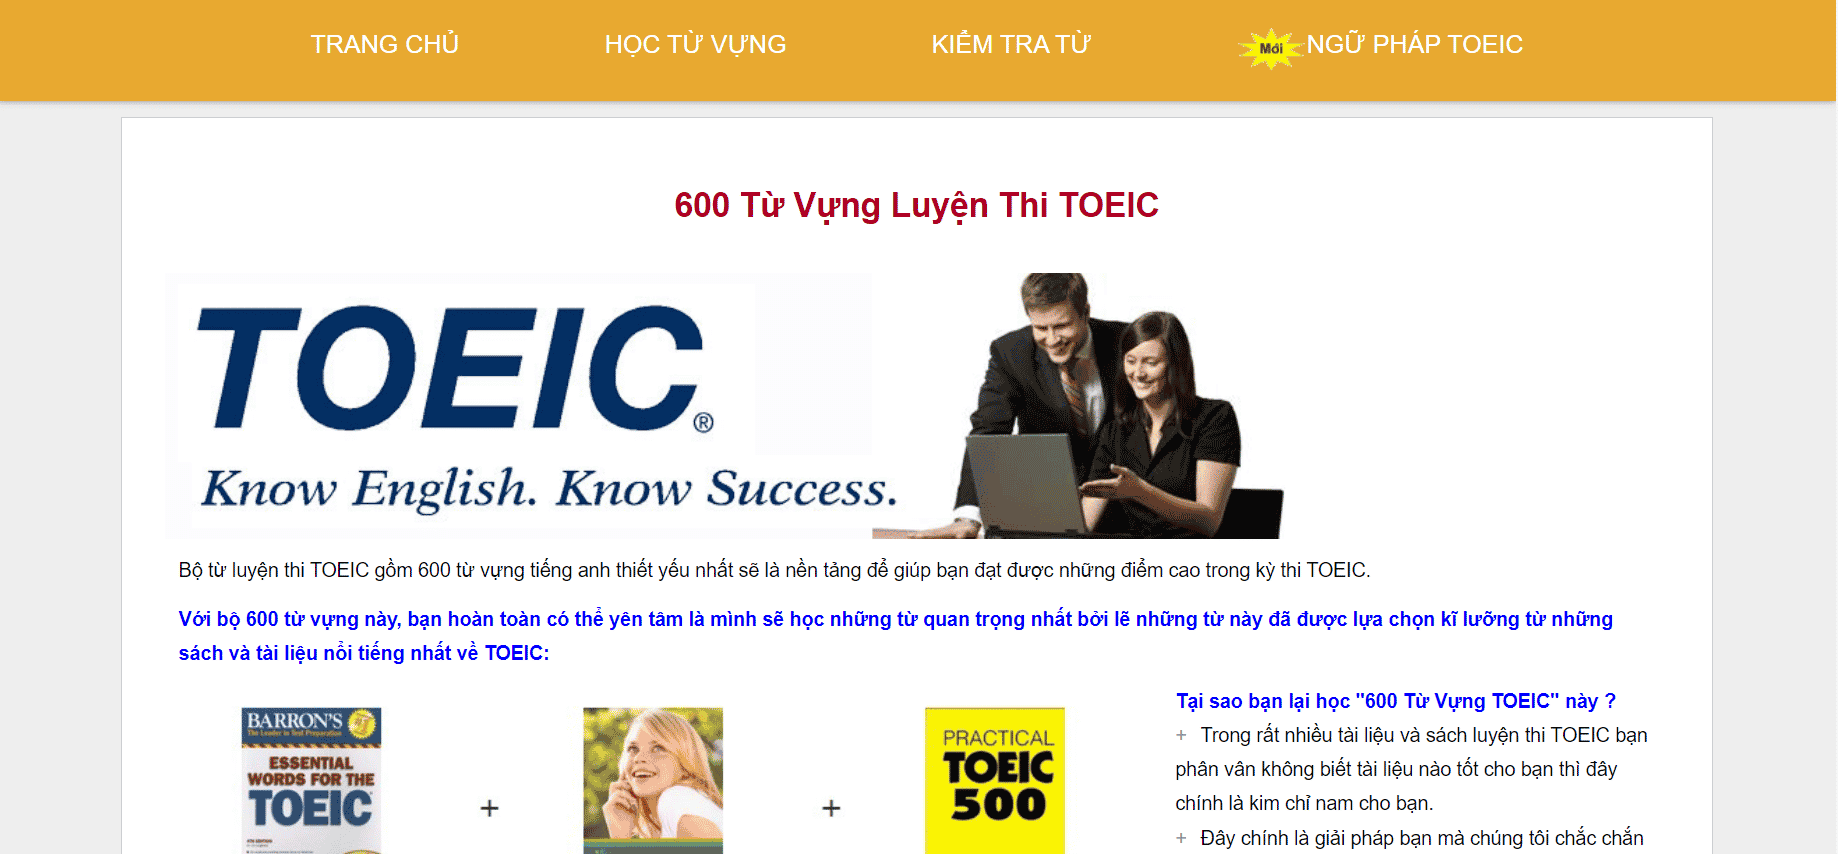 600 Tu Vung Toeic